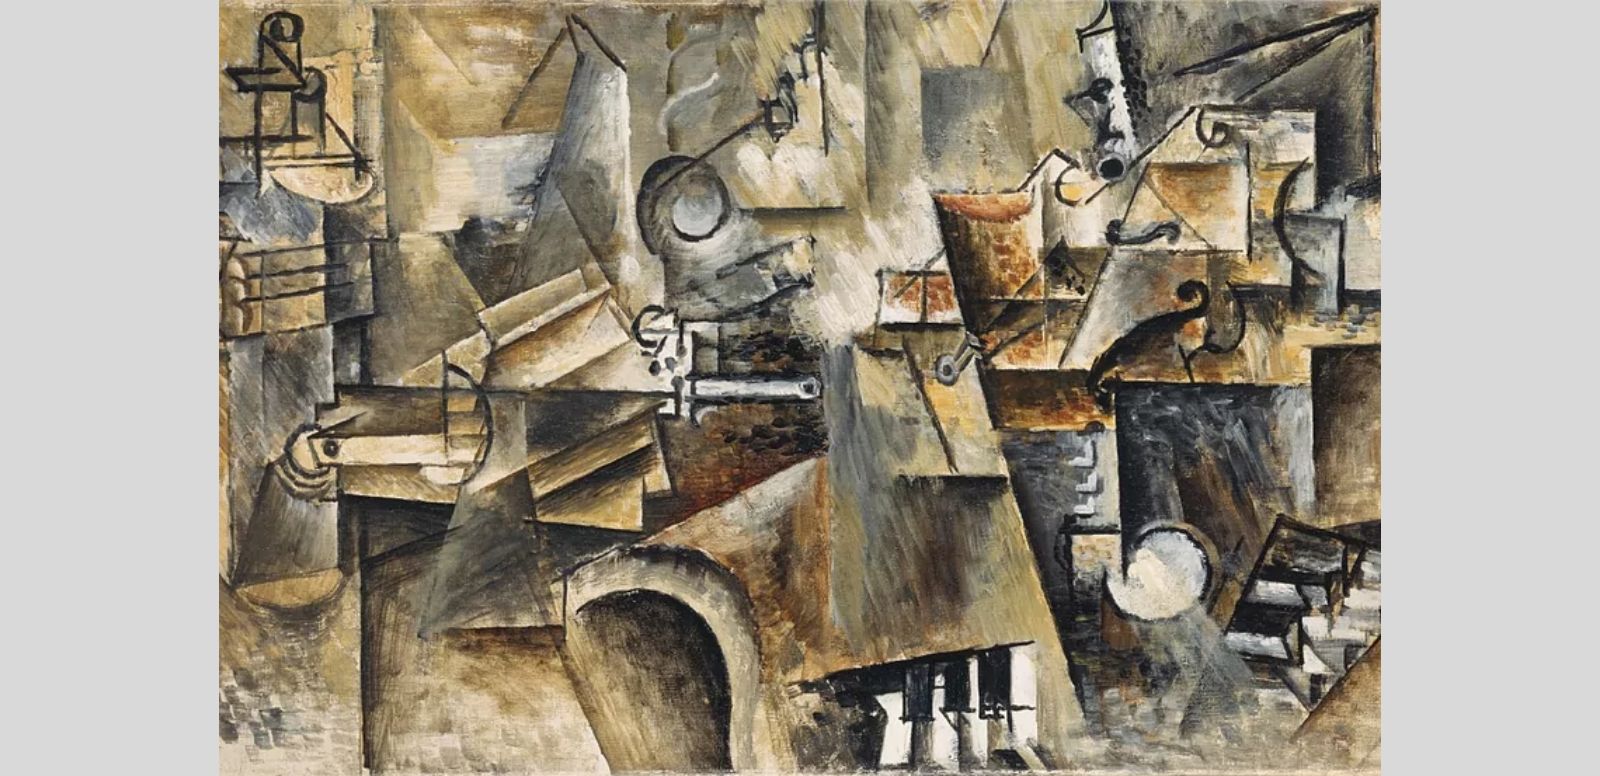 Pablo Picasso, "Naturaleza muerta sobre un piano", 1911-1912